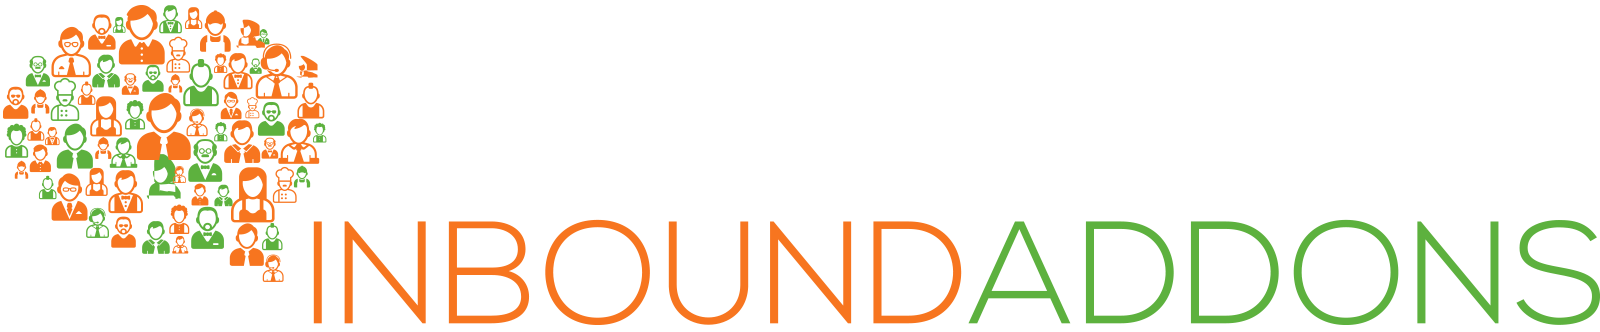 Inbound Addons logo